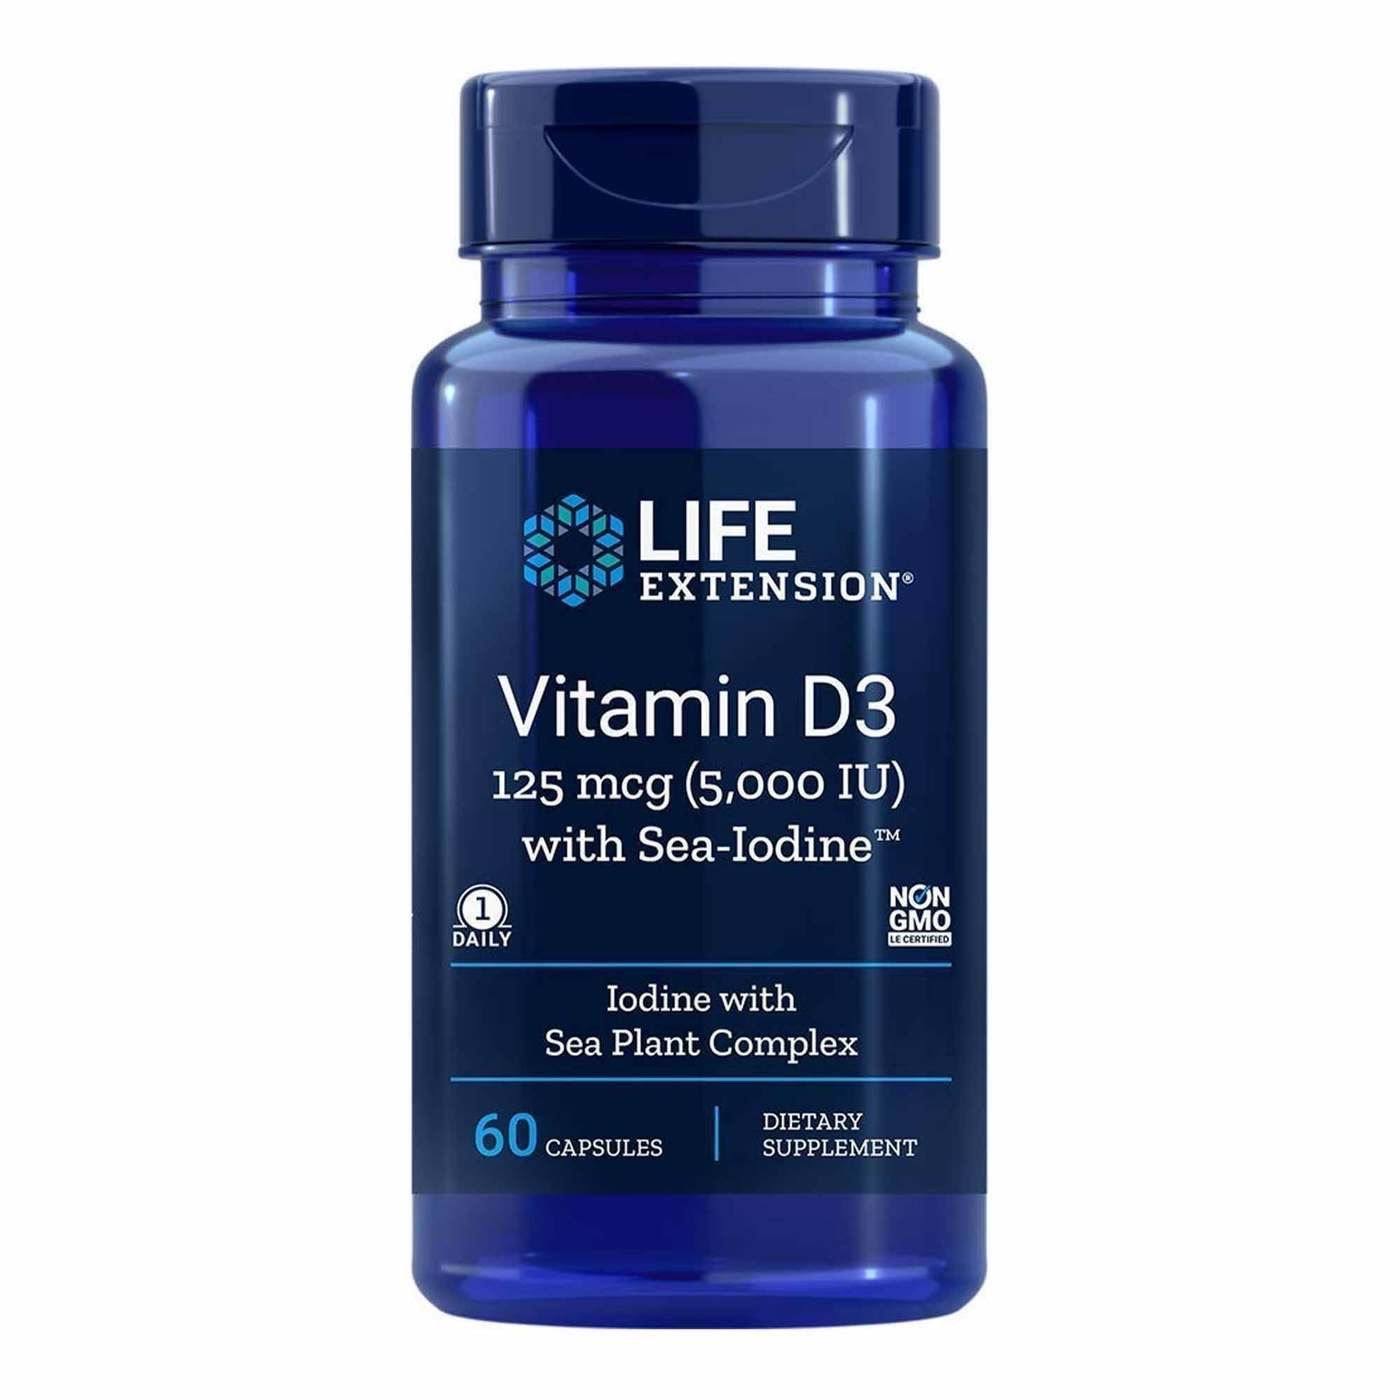 Life Extension Vitamins D3 With Sea Iodine - 5000 IU, 60 Capsules